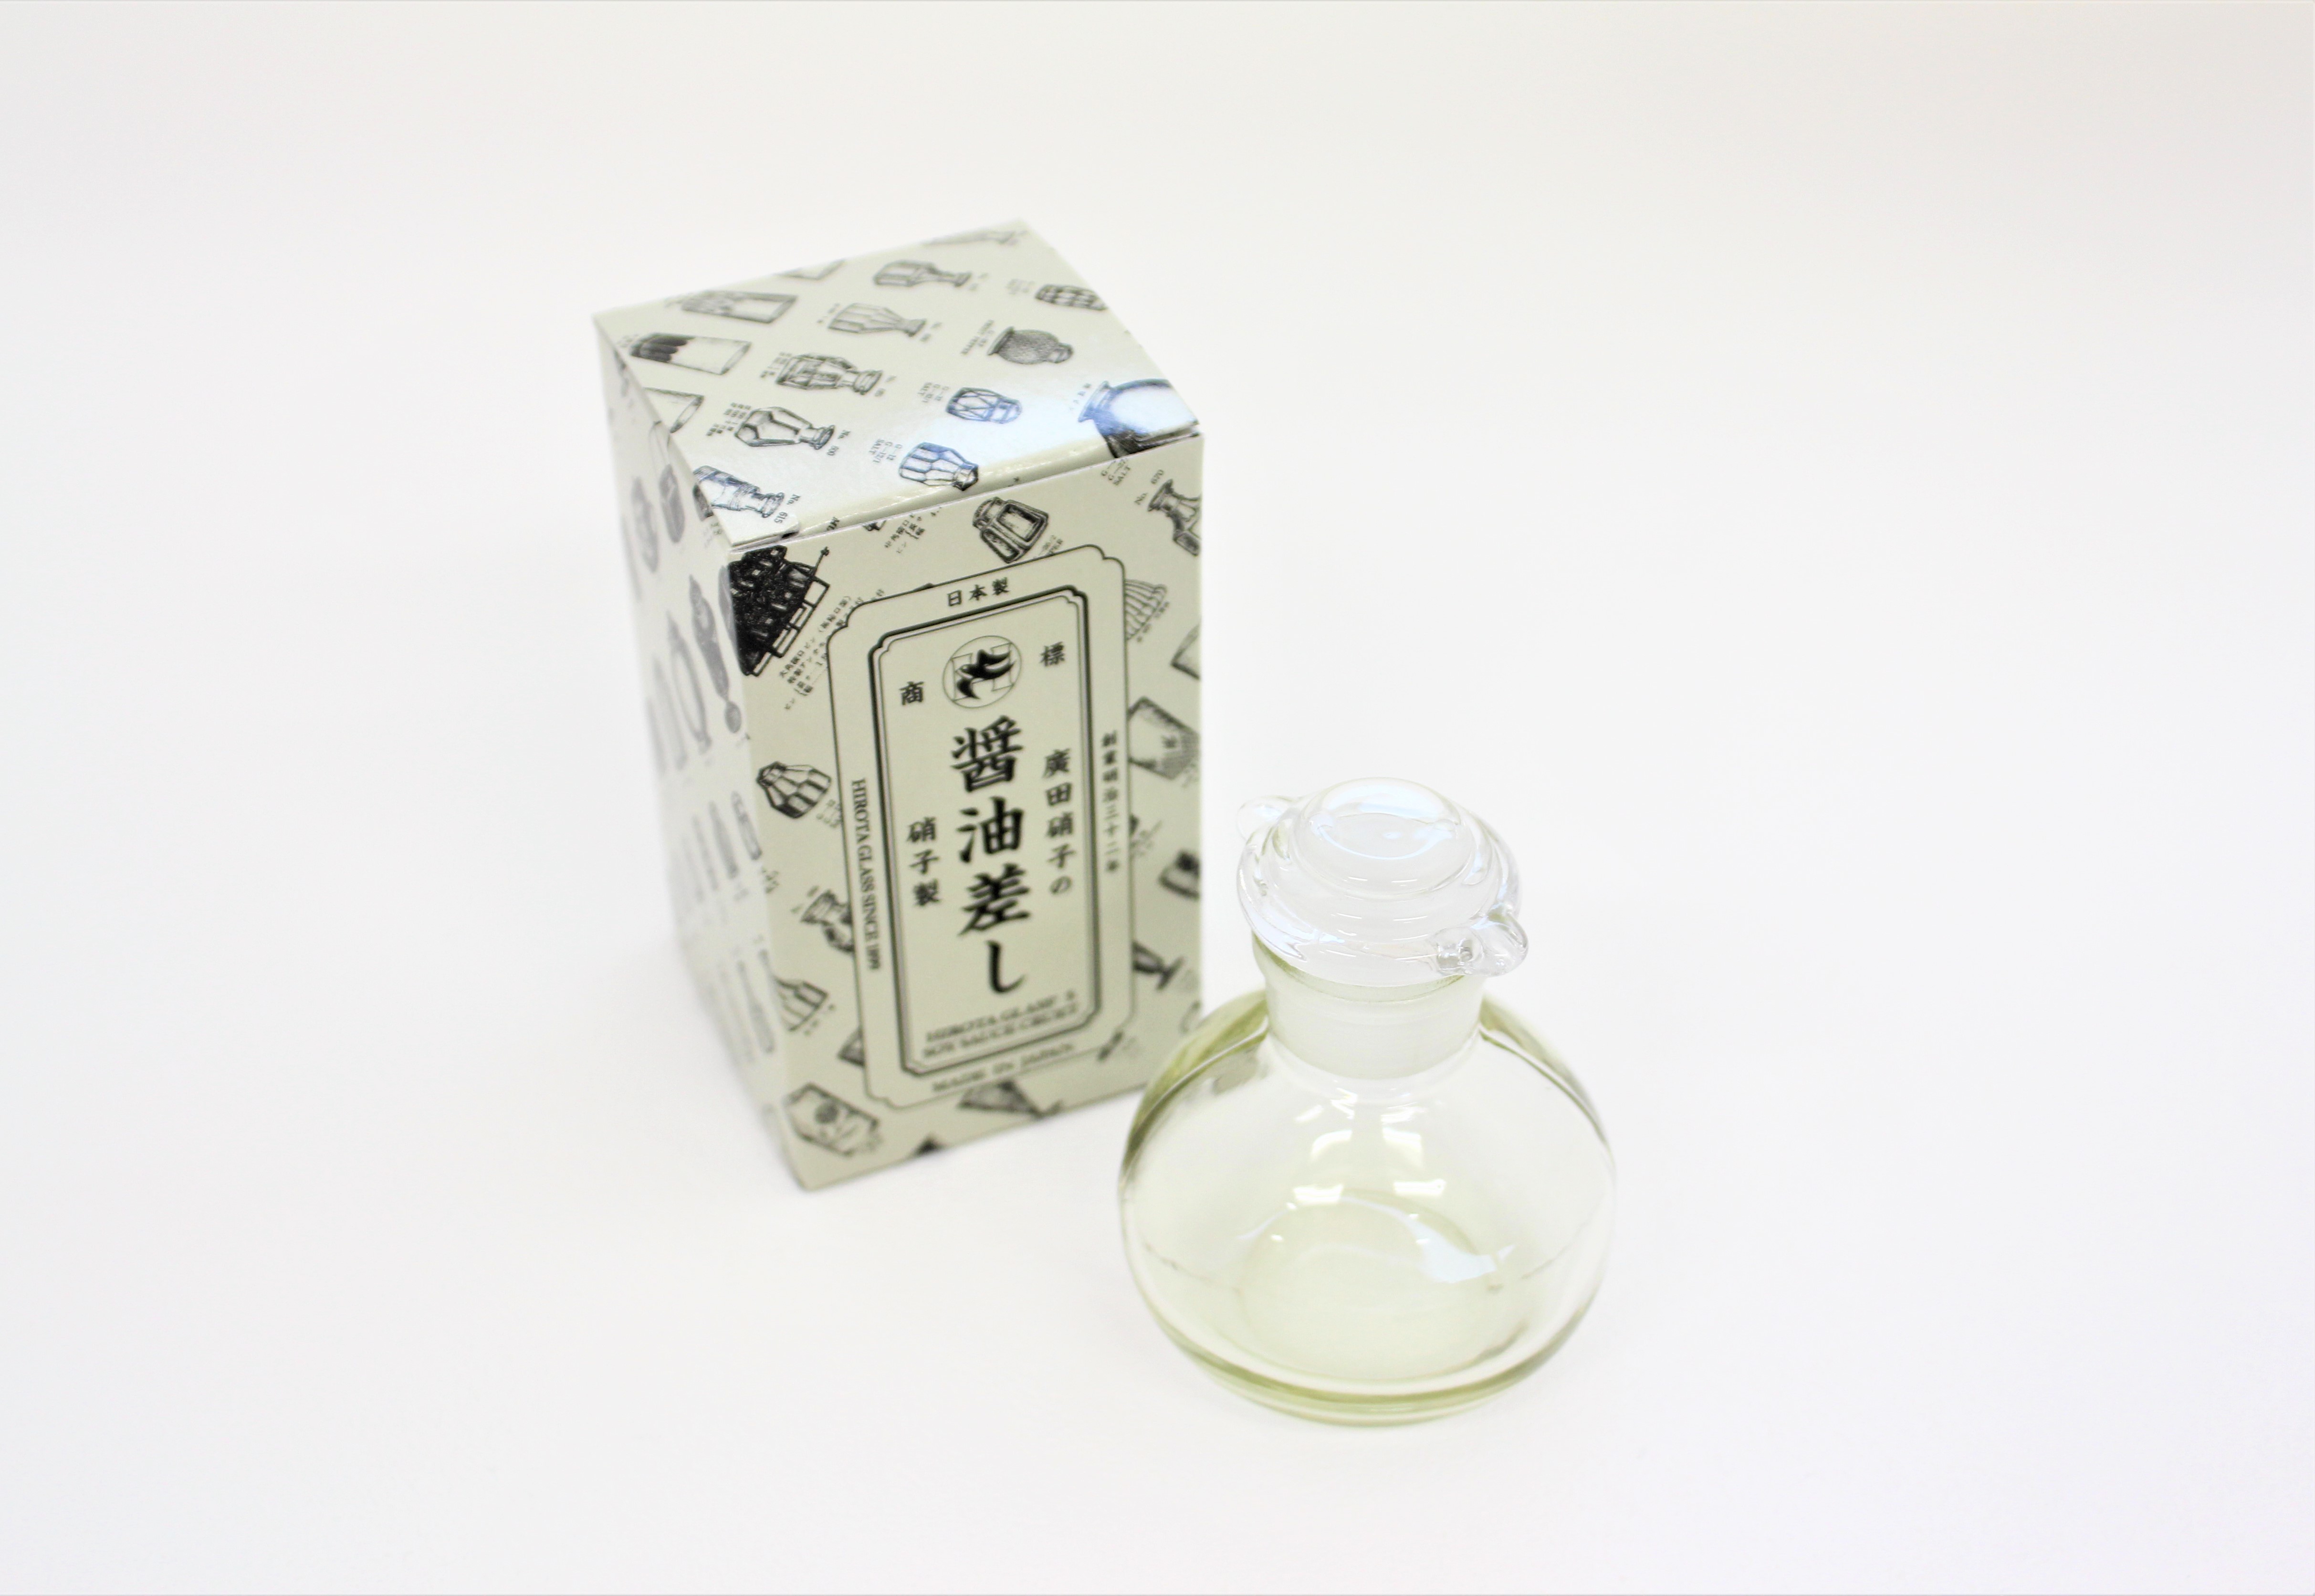 江戸硝子 復刻醤油差し 丸 | これいい和セレクト-記念品・贈り物に日本の伝統工芸品を